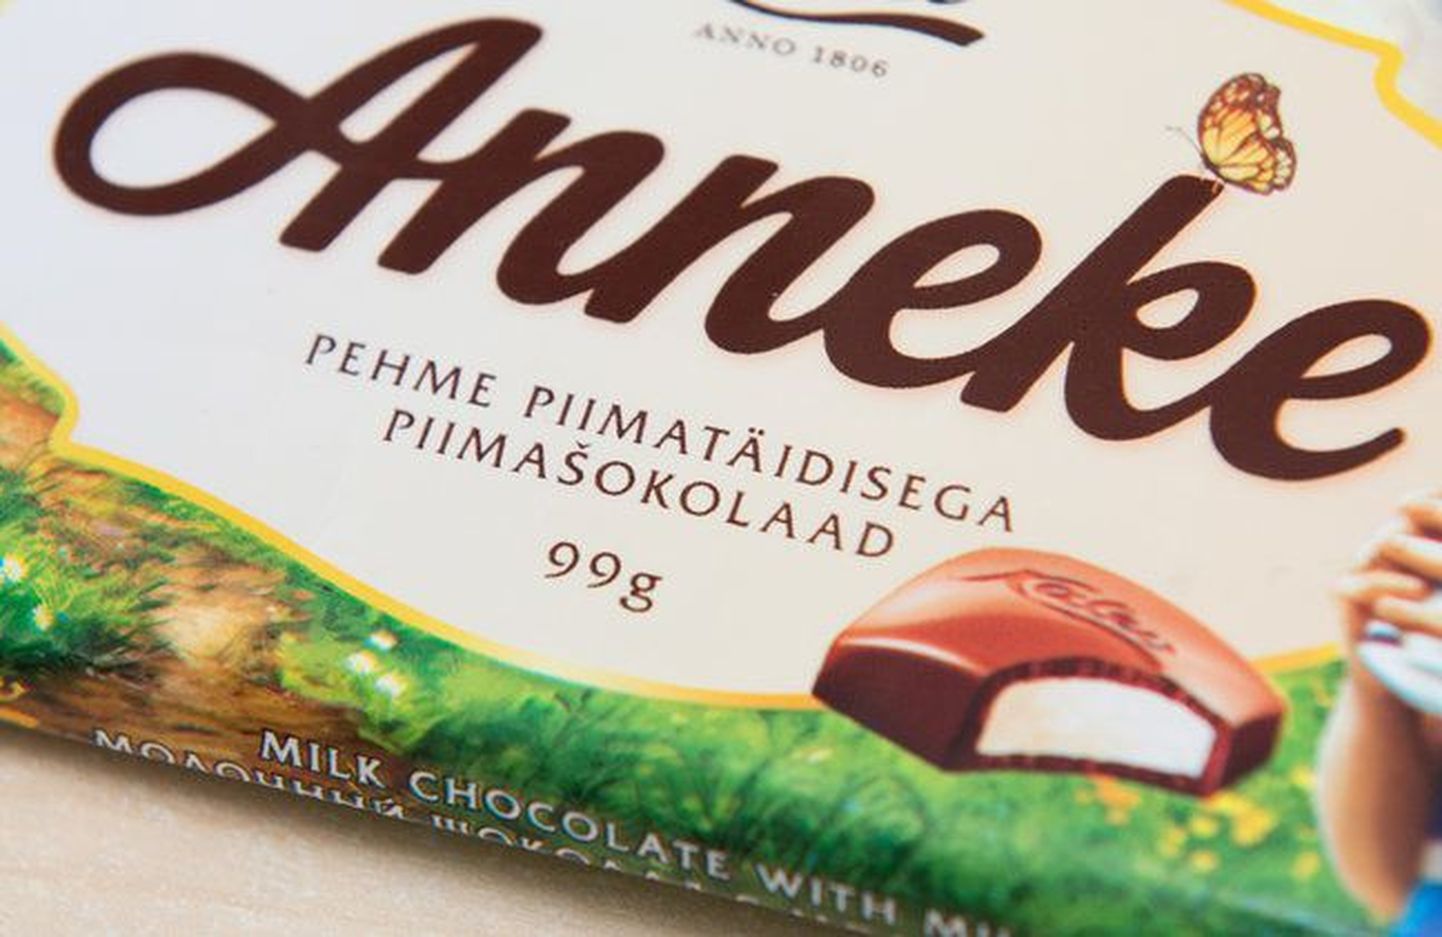 Шоколадная плитка Anneke в упаковке.